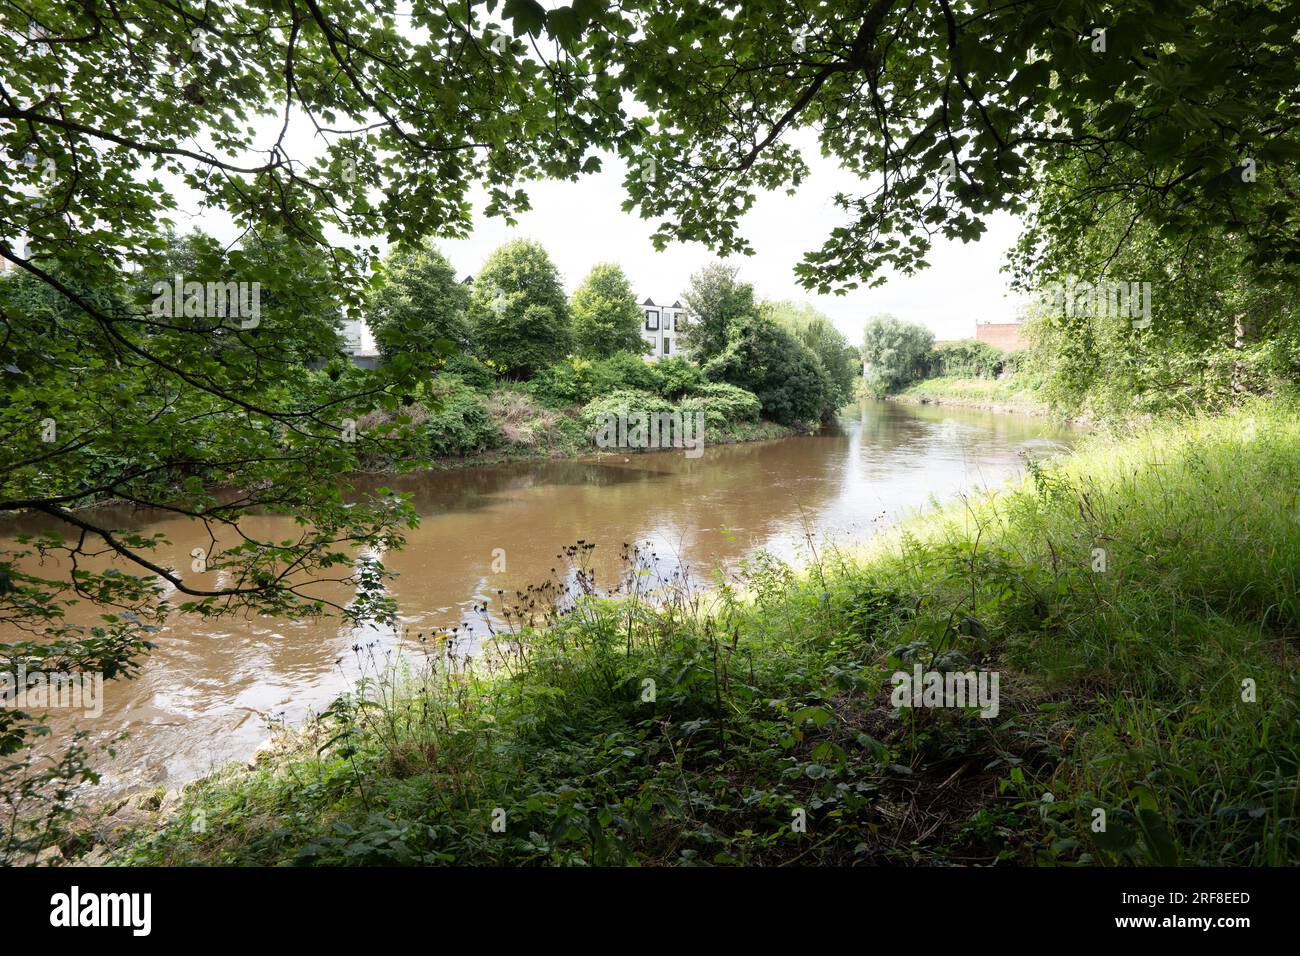 Pflanzen- und Tierwelt am Fluss Irwell. Salford. Bezirk von Greater Manchester. Der Fluss trennt Salford und Manchester. Stockfoto